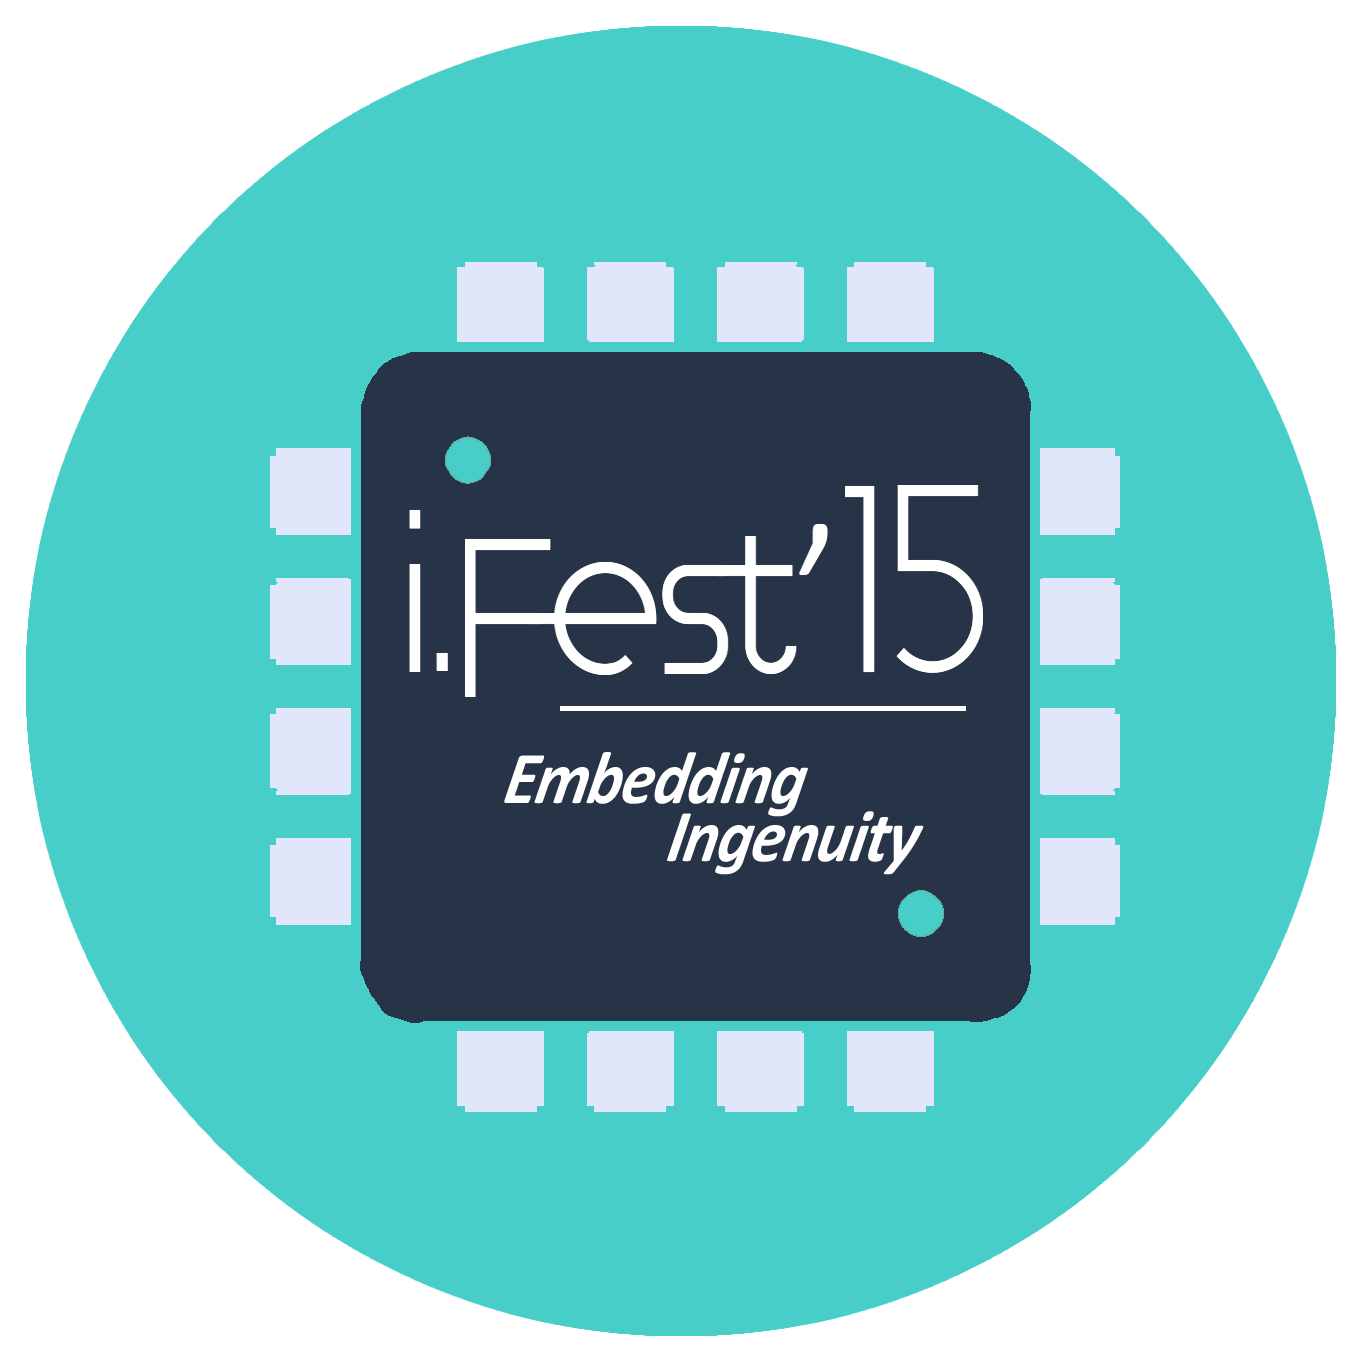 I.Fest 2015 - Embedding Ingenuity